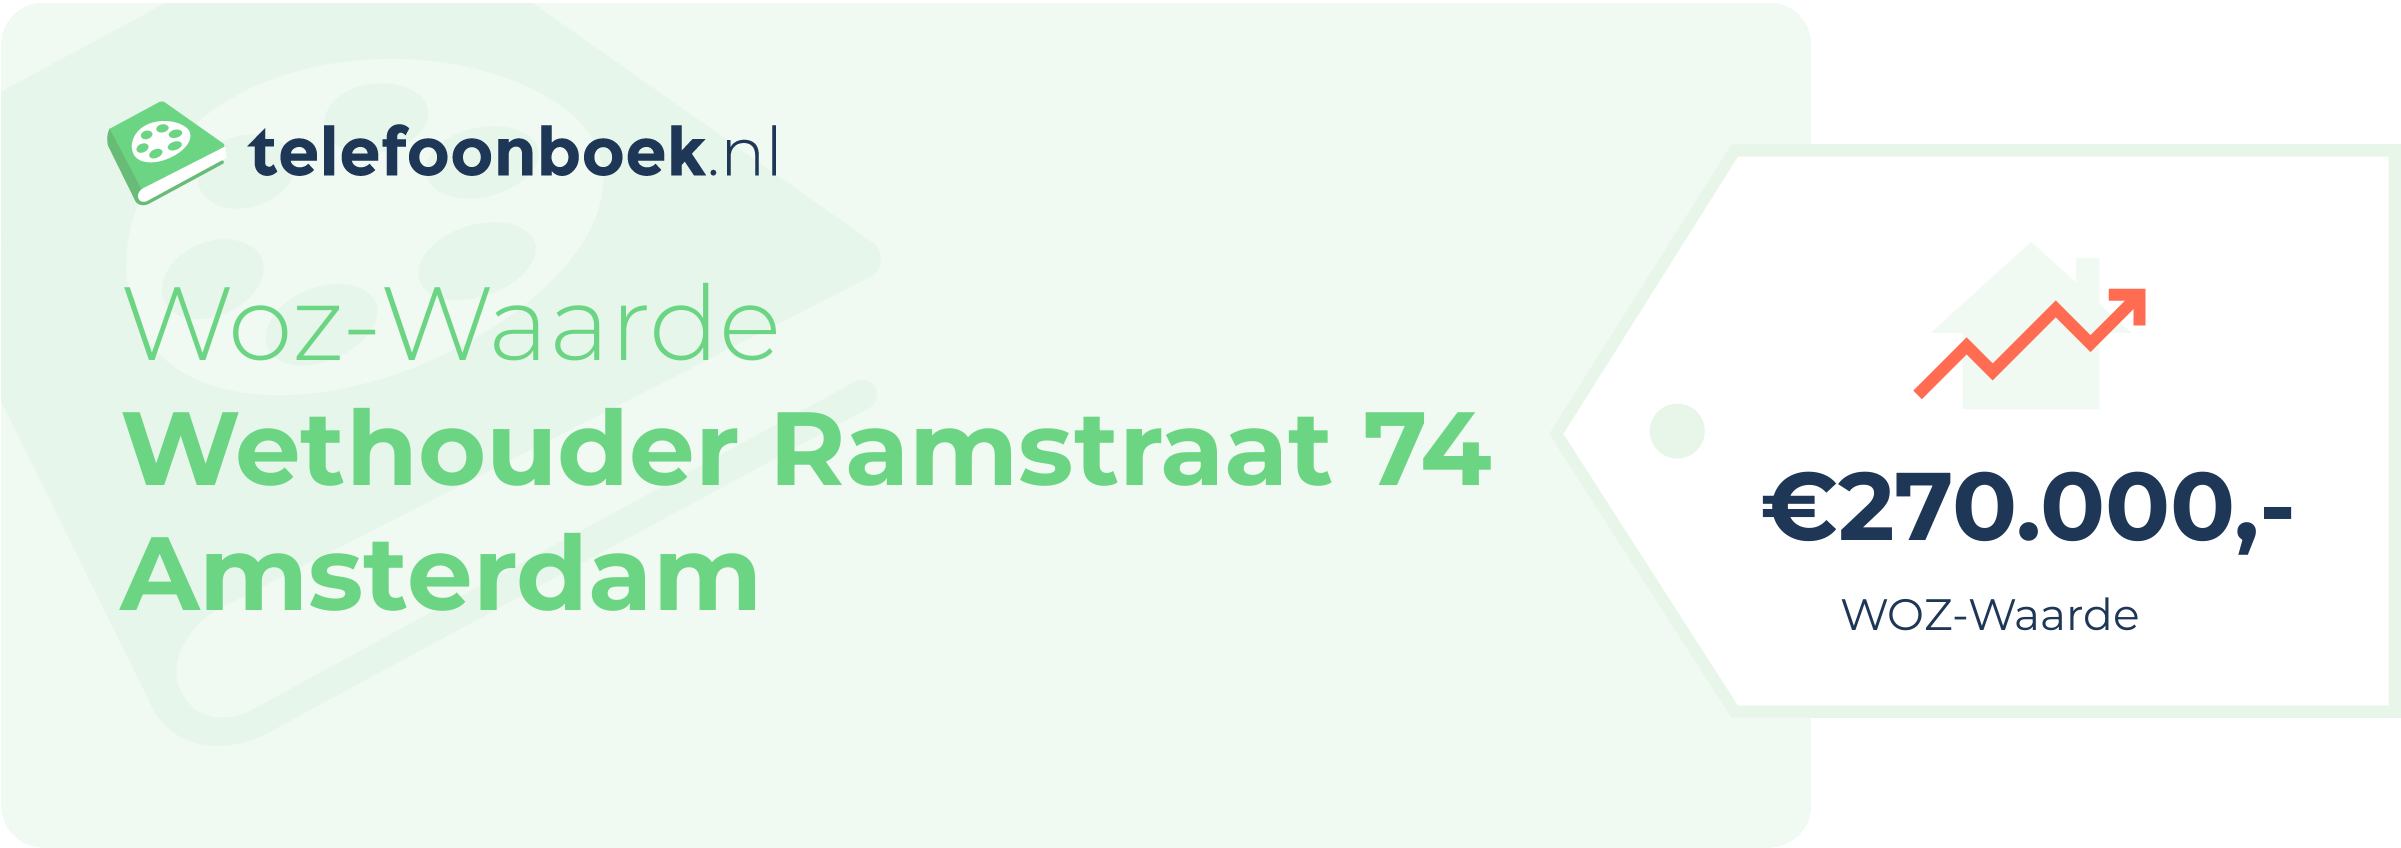 WOZ-waarde Wethouder Ramstraat 74 Amsterdam